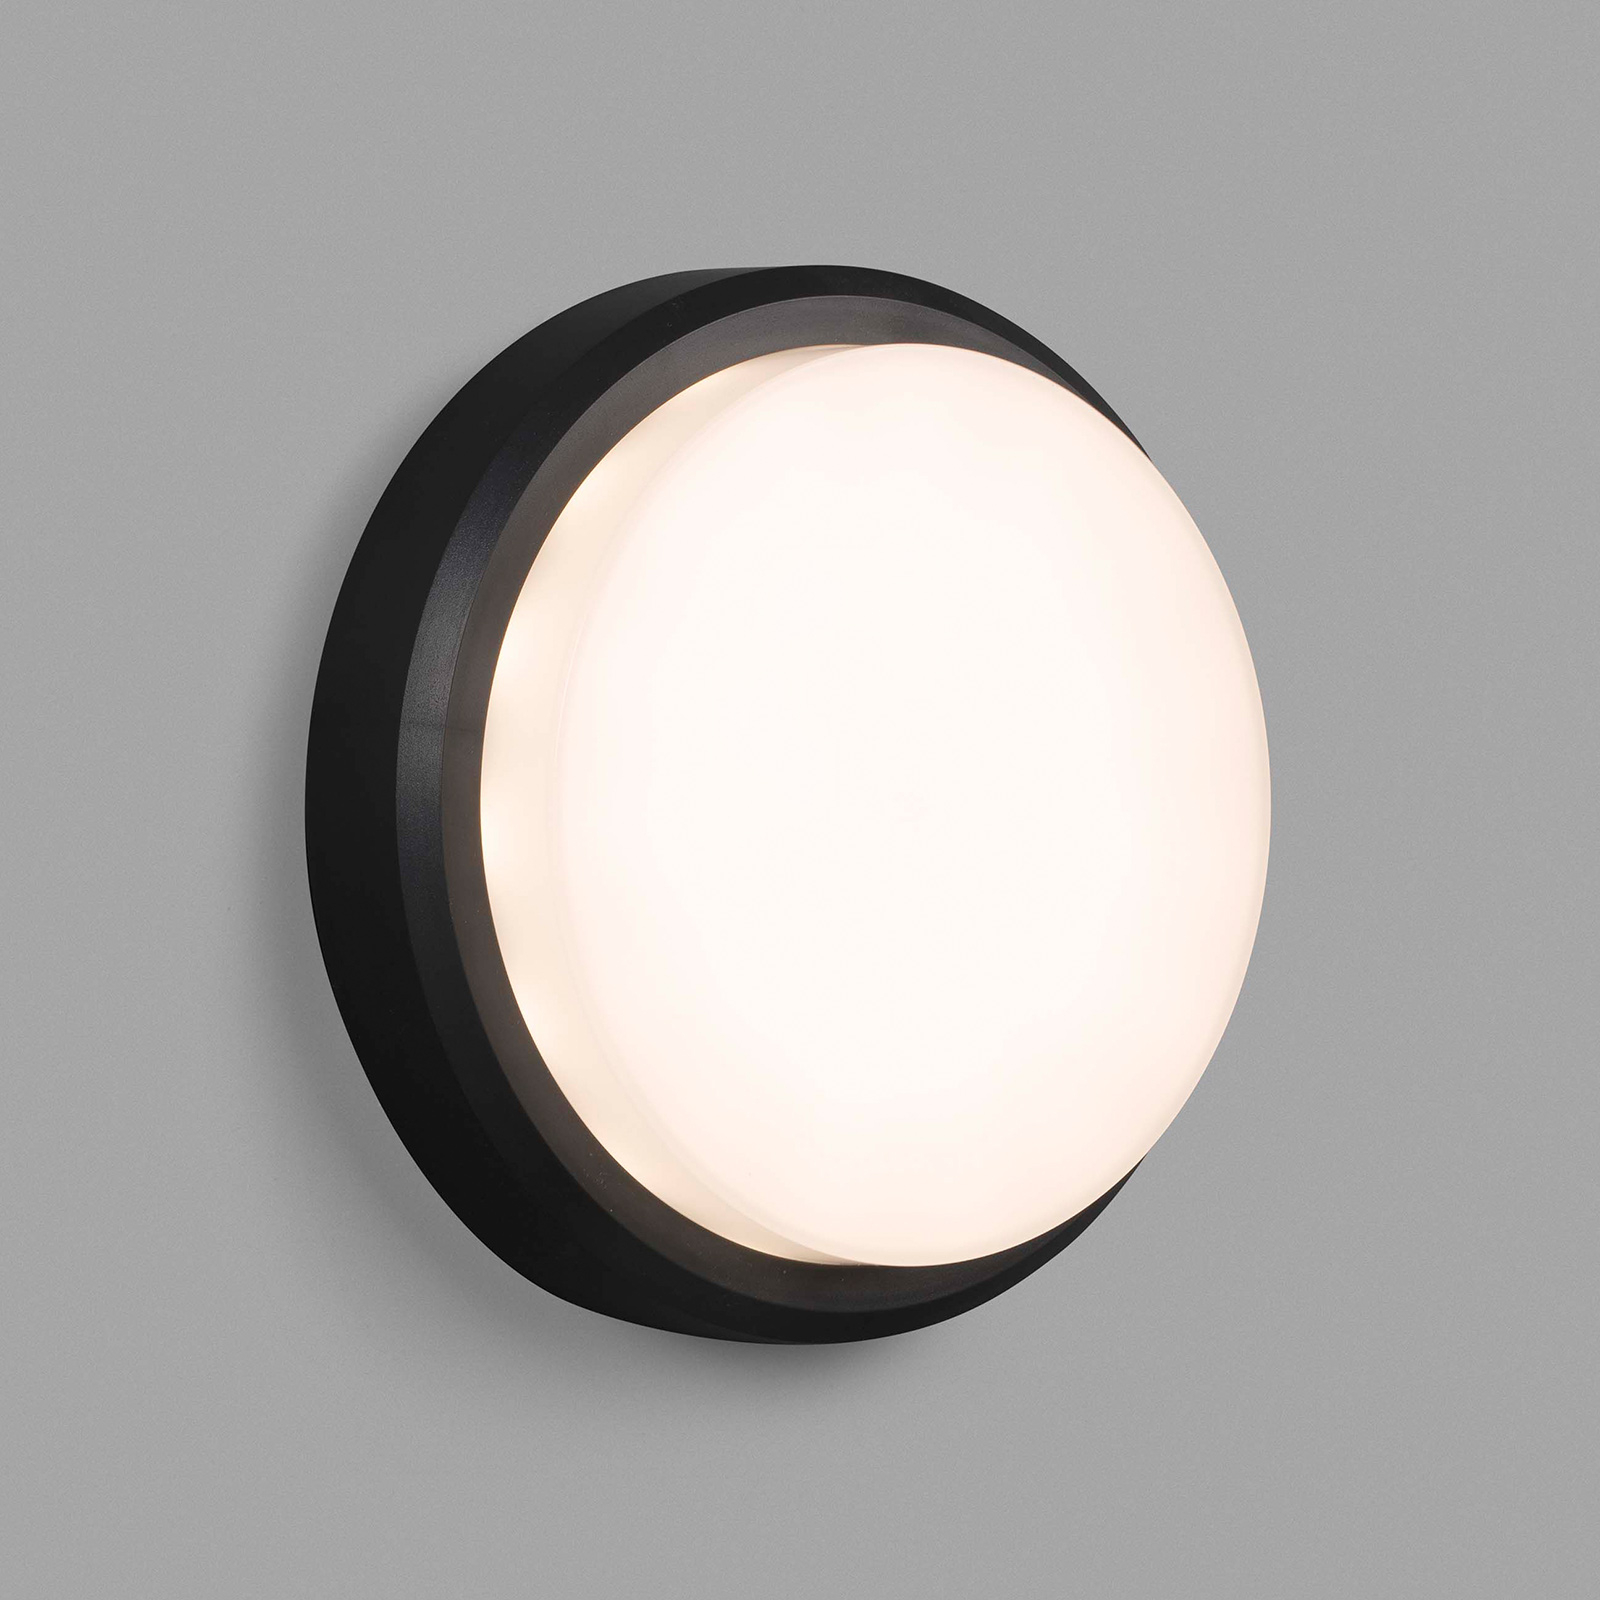 LED-Außenwandleuchte Tom XL, IK10, dunkelgrau/weiß